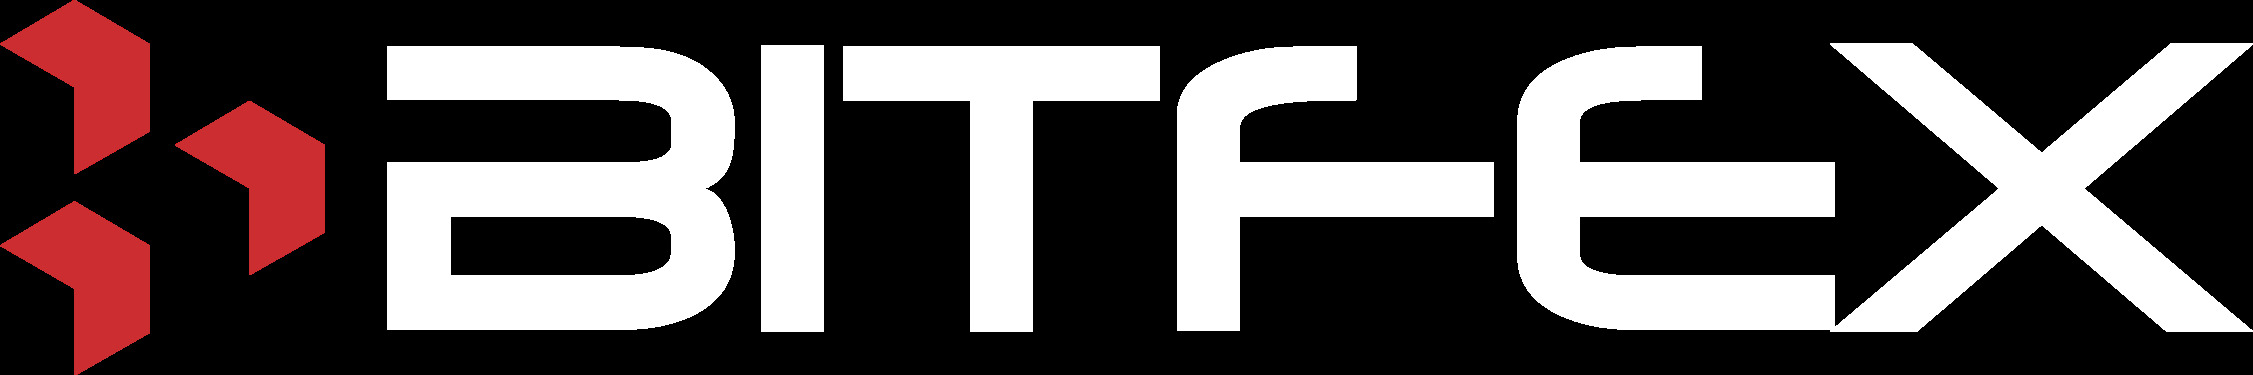 Bitfex-logo-white.jpg